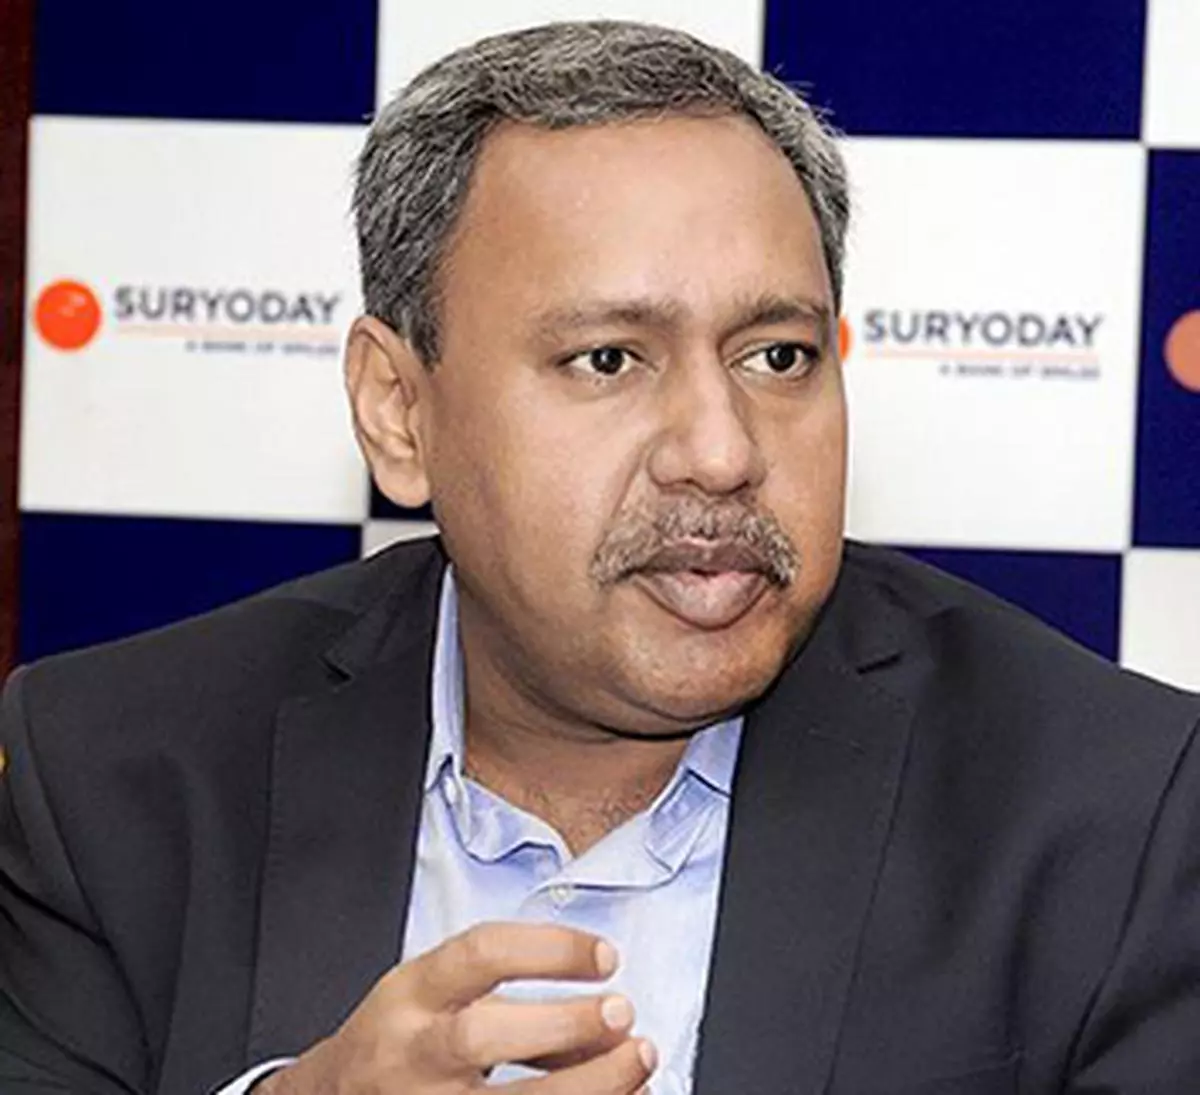 
R Baskar Babu, CEO, Suryoday Small Finance Bank